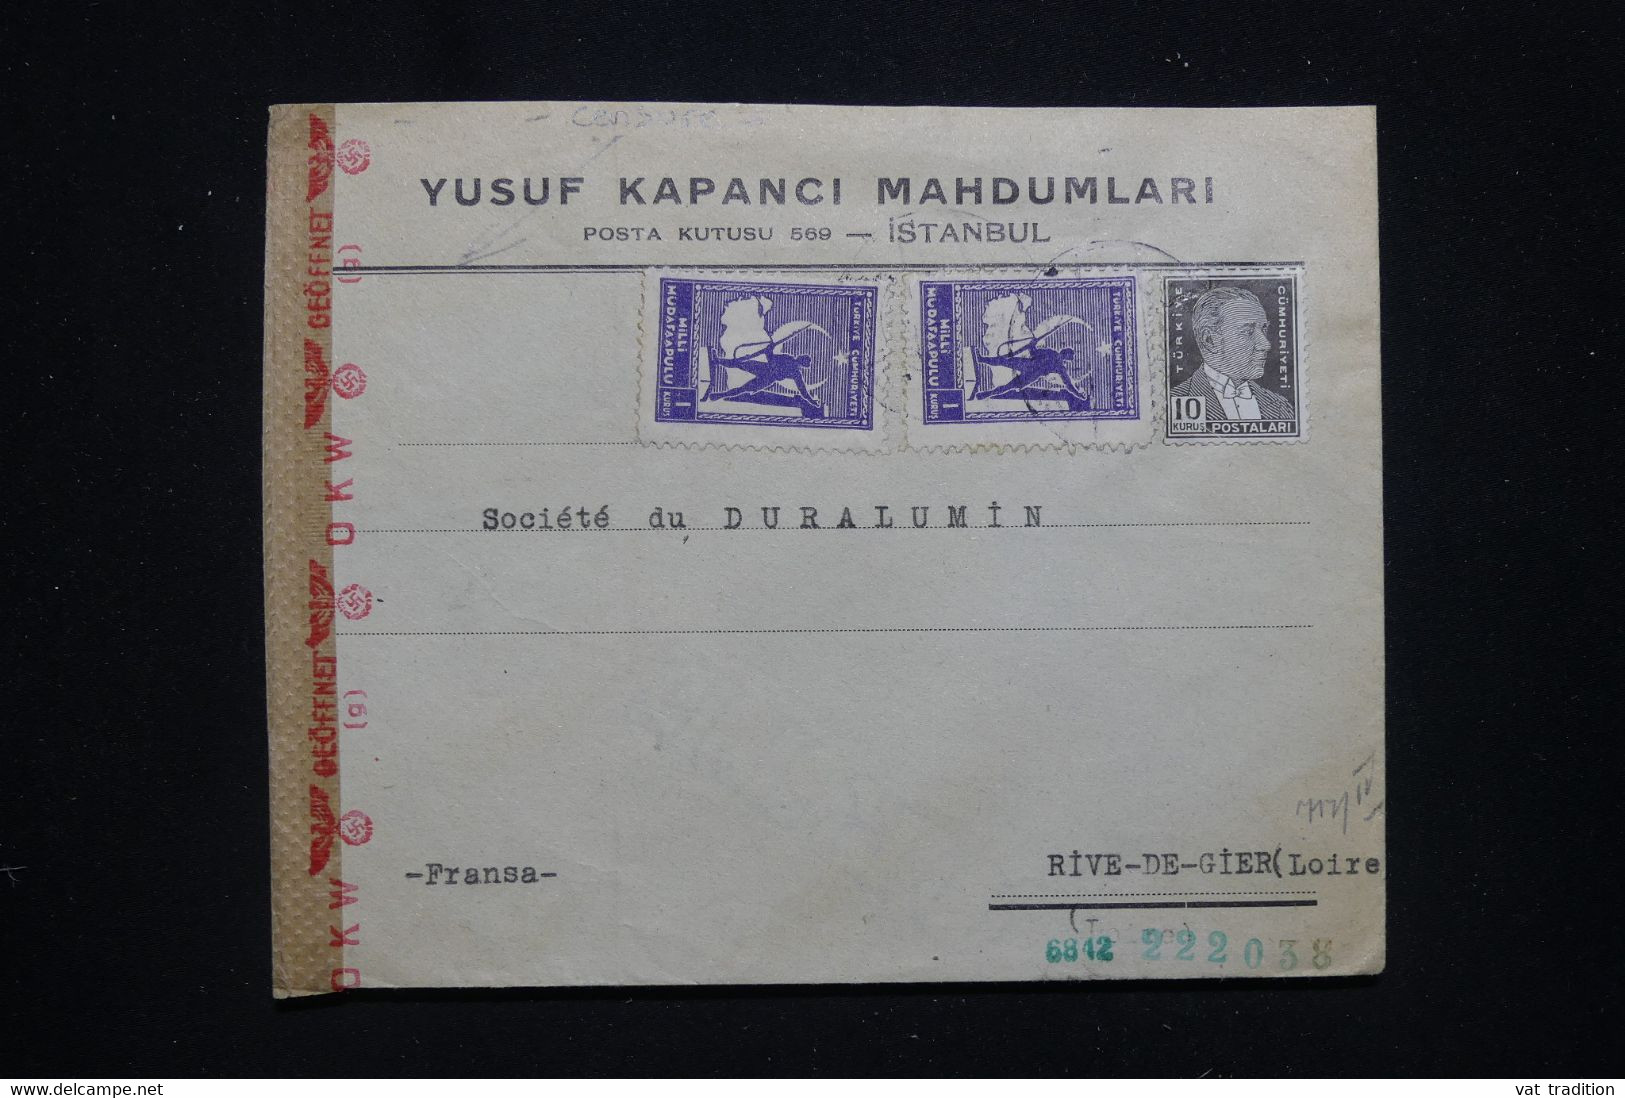 TURQUIE - Enveloppe Commerciale De Istanbul Pour La France Avec Contrôle Postal Allemand - L 93447 - Lettres & Documents